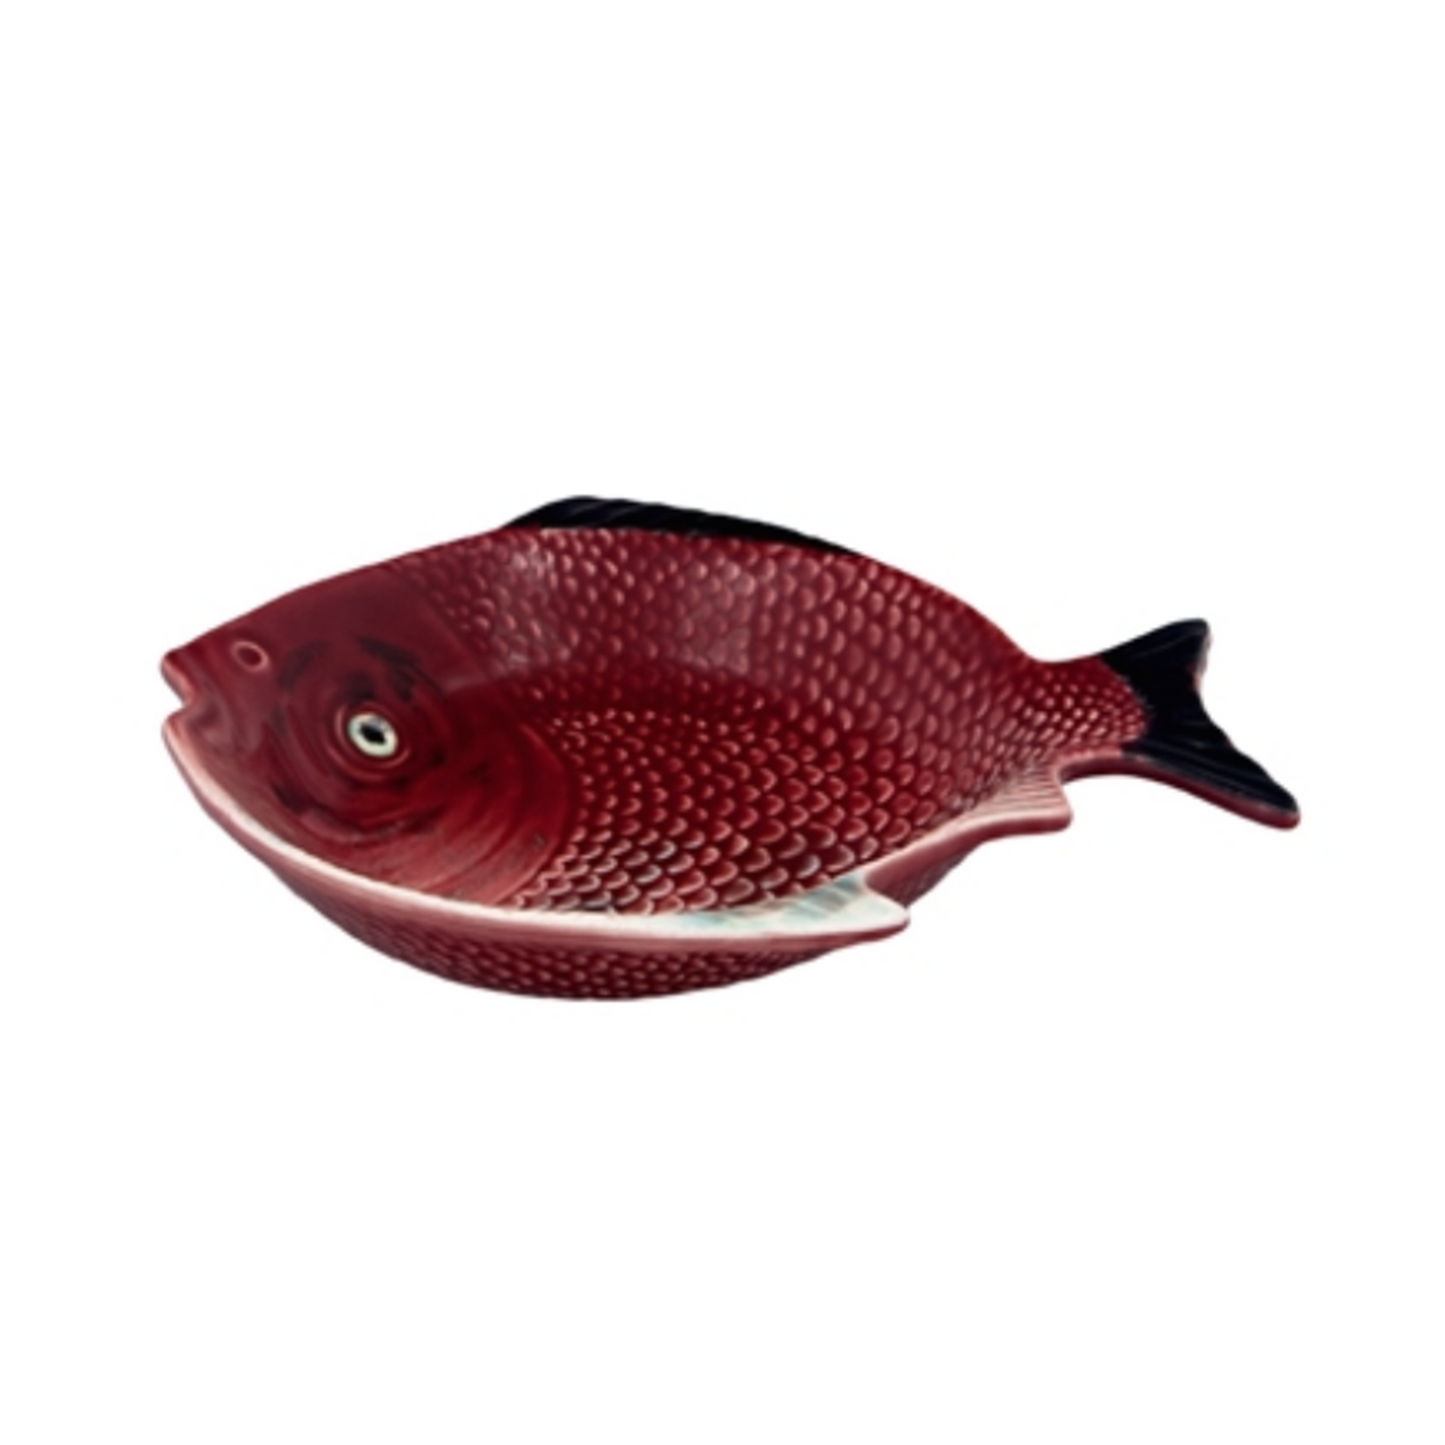 SOUP PLATE 24 FISH - BORDALLO PINHEIRO - Compralo en CorinneRegalos.com